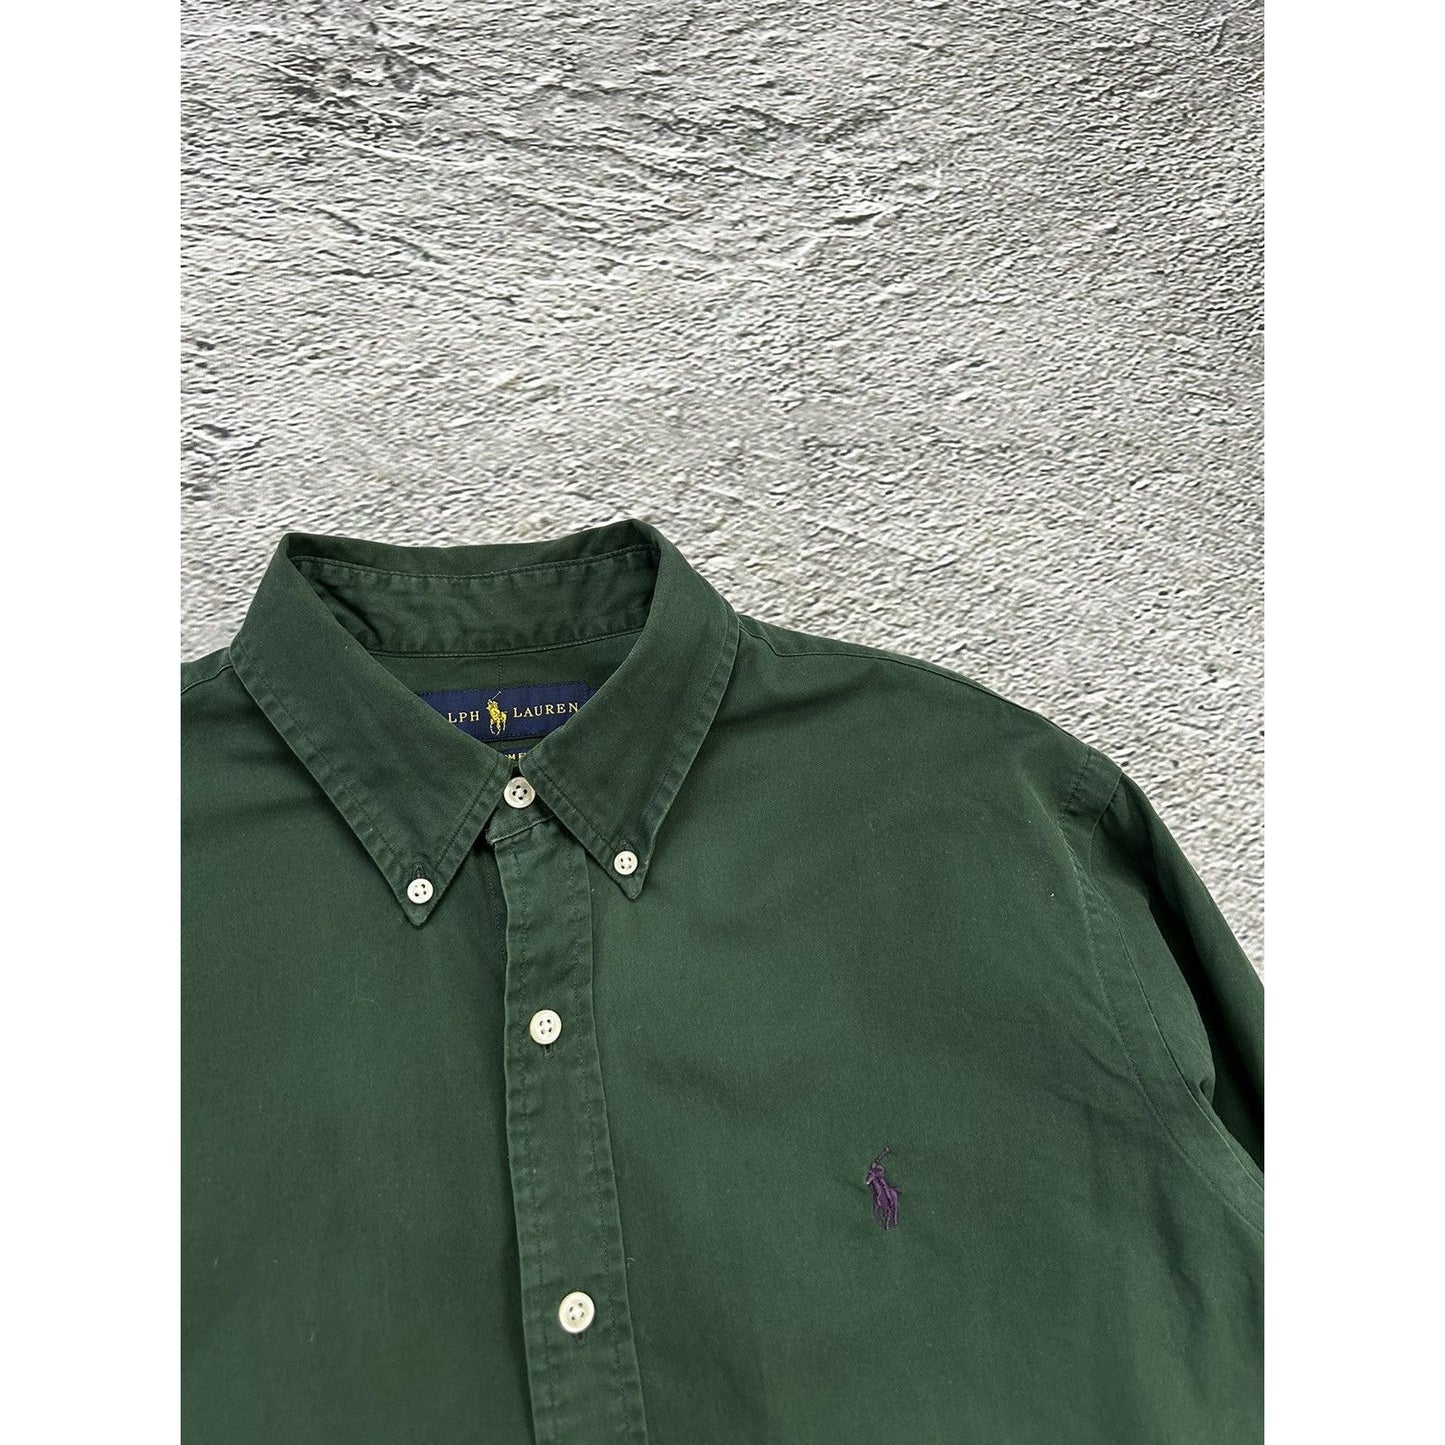 Polo Ralph Lauren green shirt button up longsleeve plain